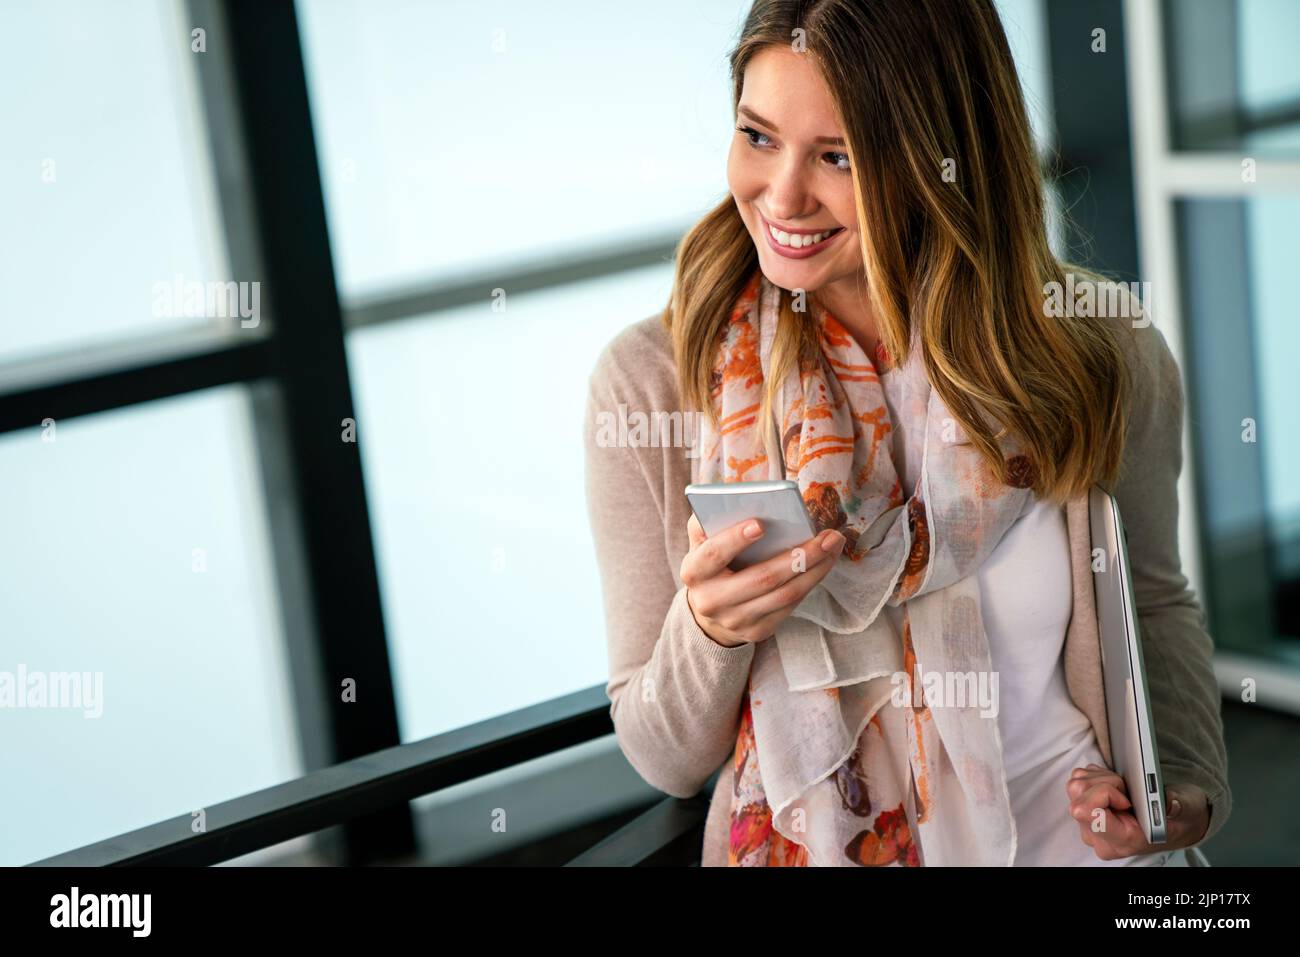 Portrait extérieur de la belle jeune entreprise, étudiante femme riant et utilisant le téléphone cellulaire Banque D'Images